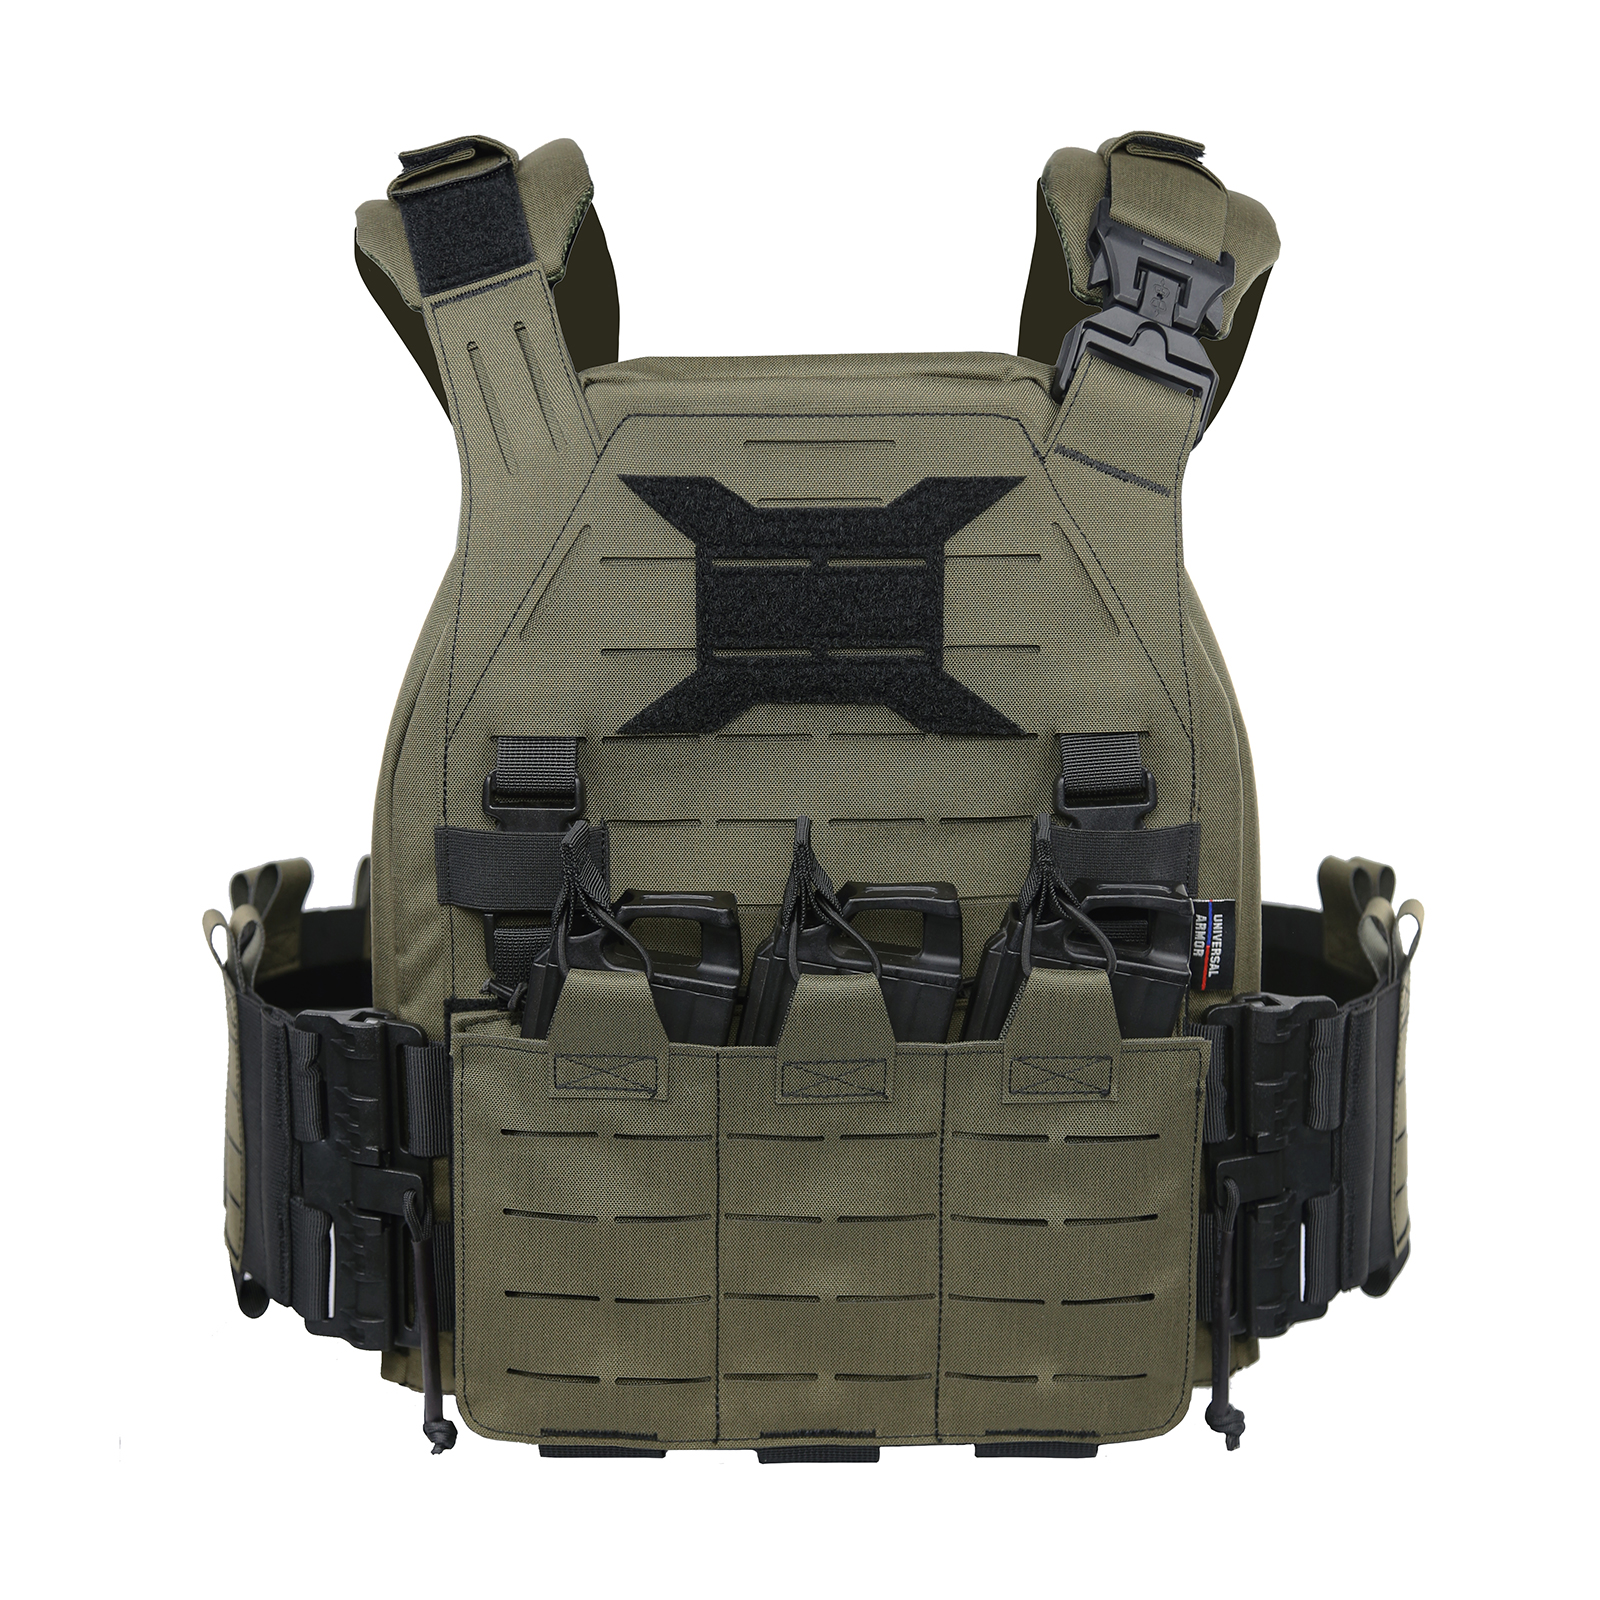 TacticalXmen UTA Level III Rifle Rated Body Armor Set